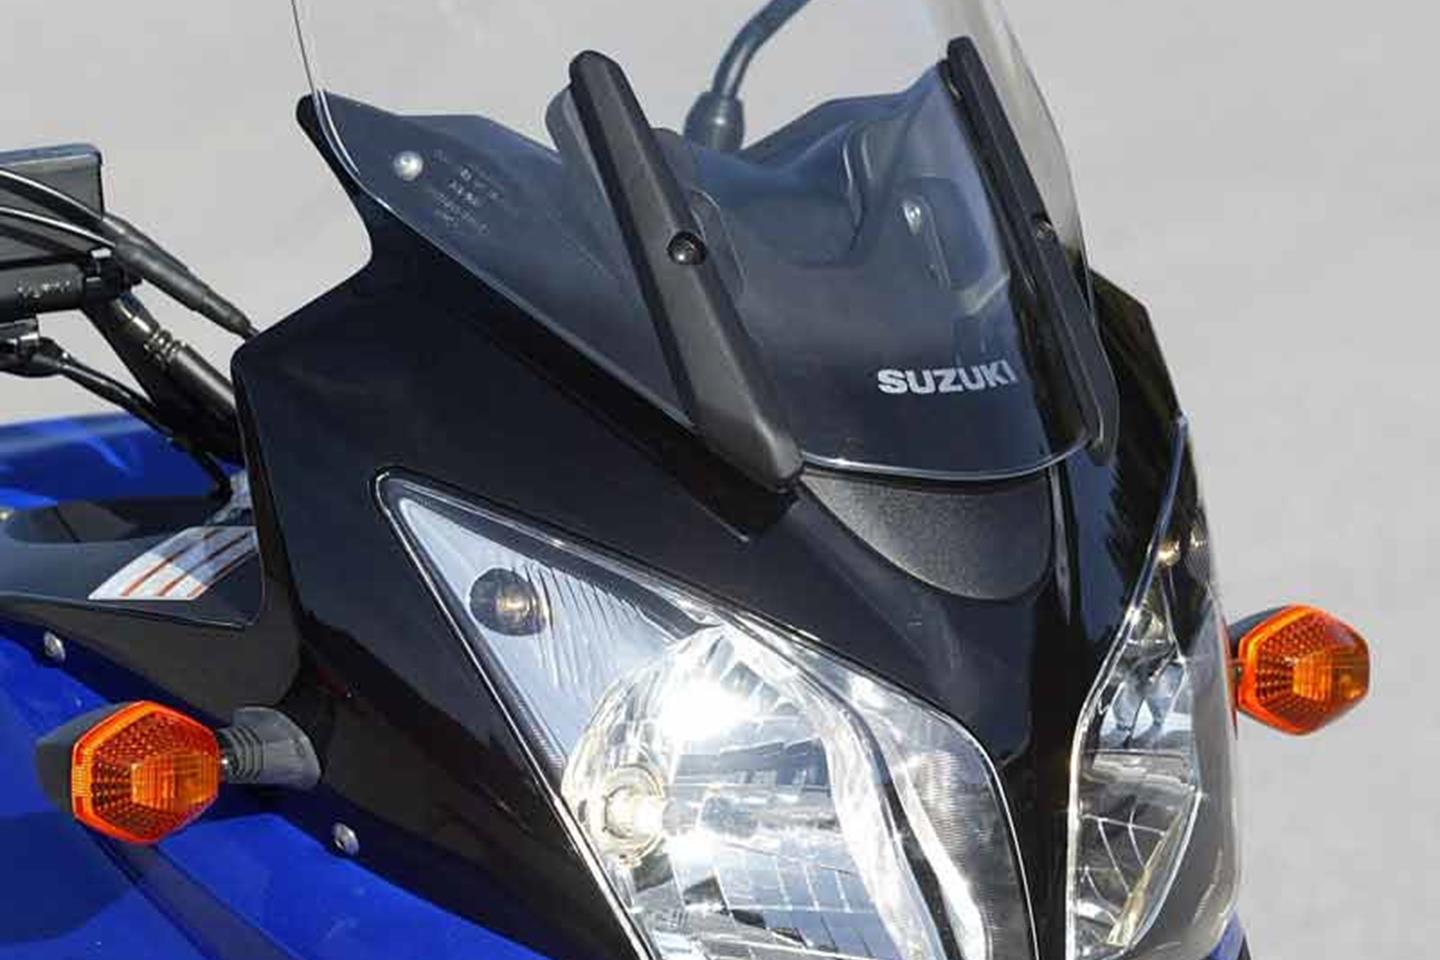 SUZUKI DL650 V-STROM (2004-2010) Review, Specs & Prices